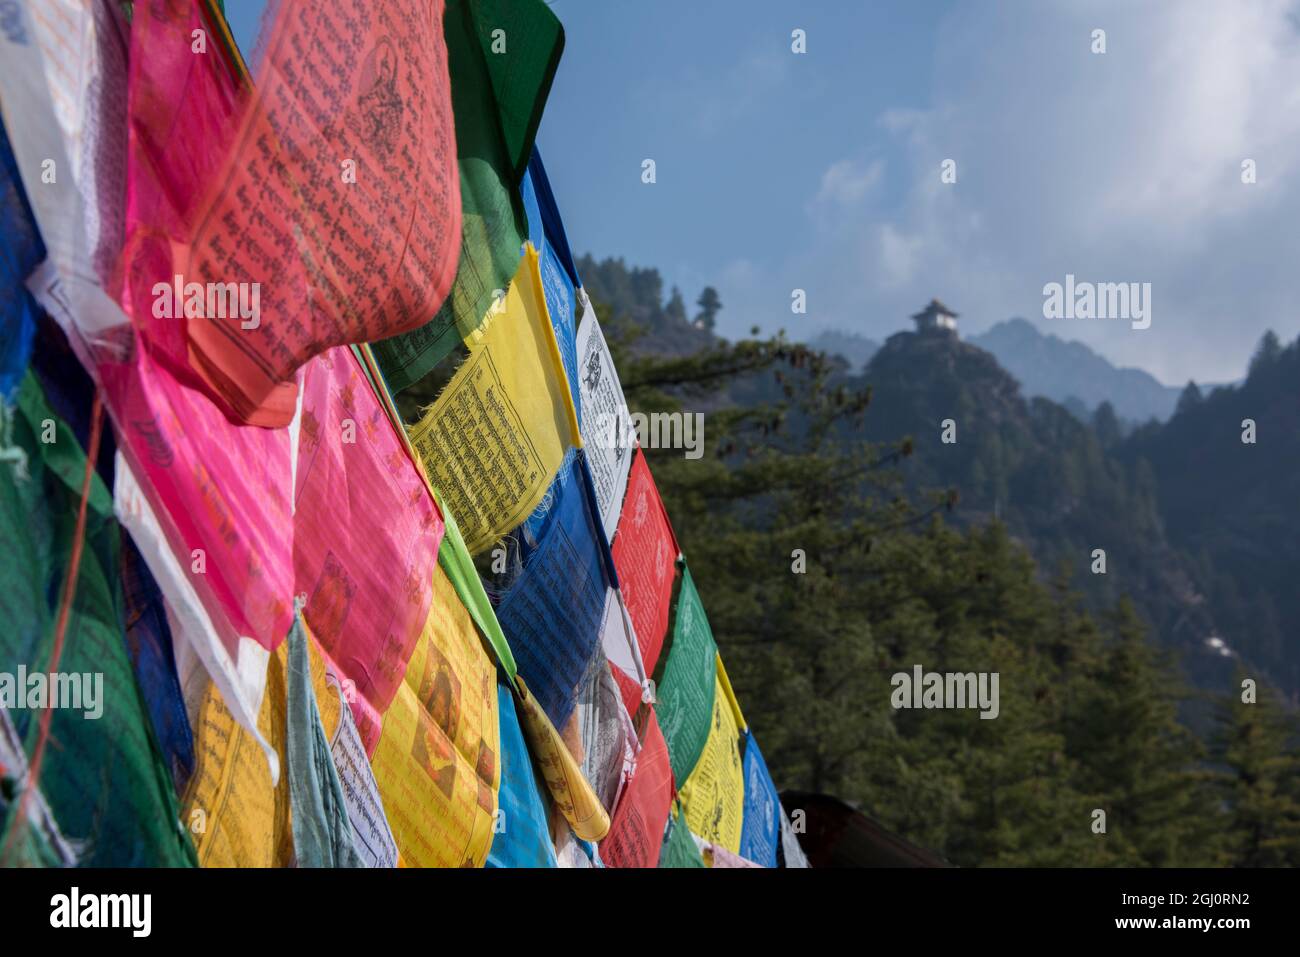 Le Bhoutan, Paro. Prière flages colorés en face de petite dépendance de la Tiger's Nest, sacrée temple bouddhiste de l'Himalaya. Banque D'Images